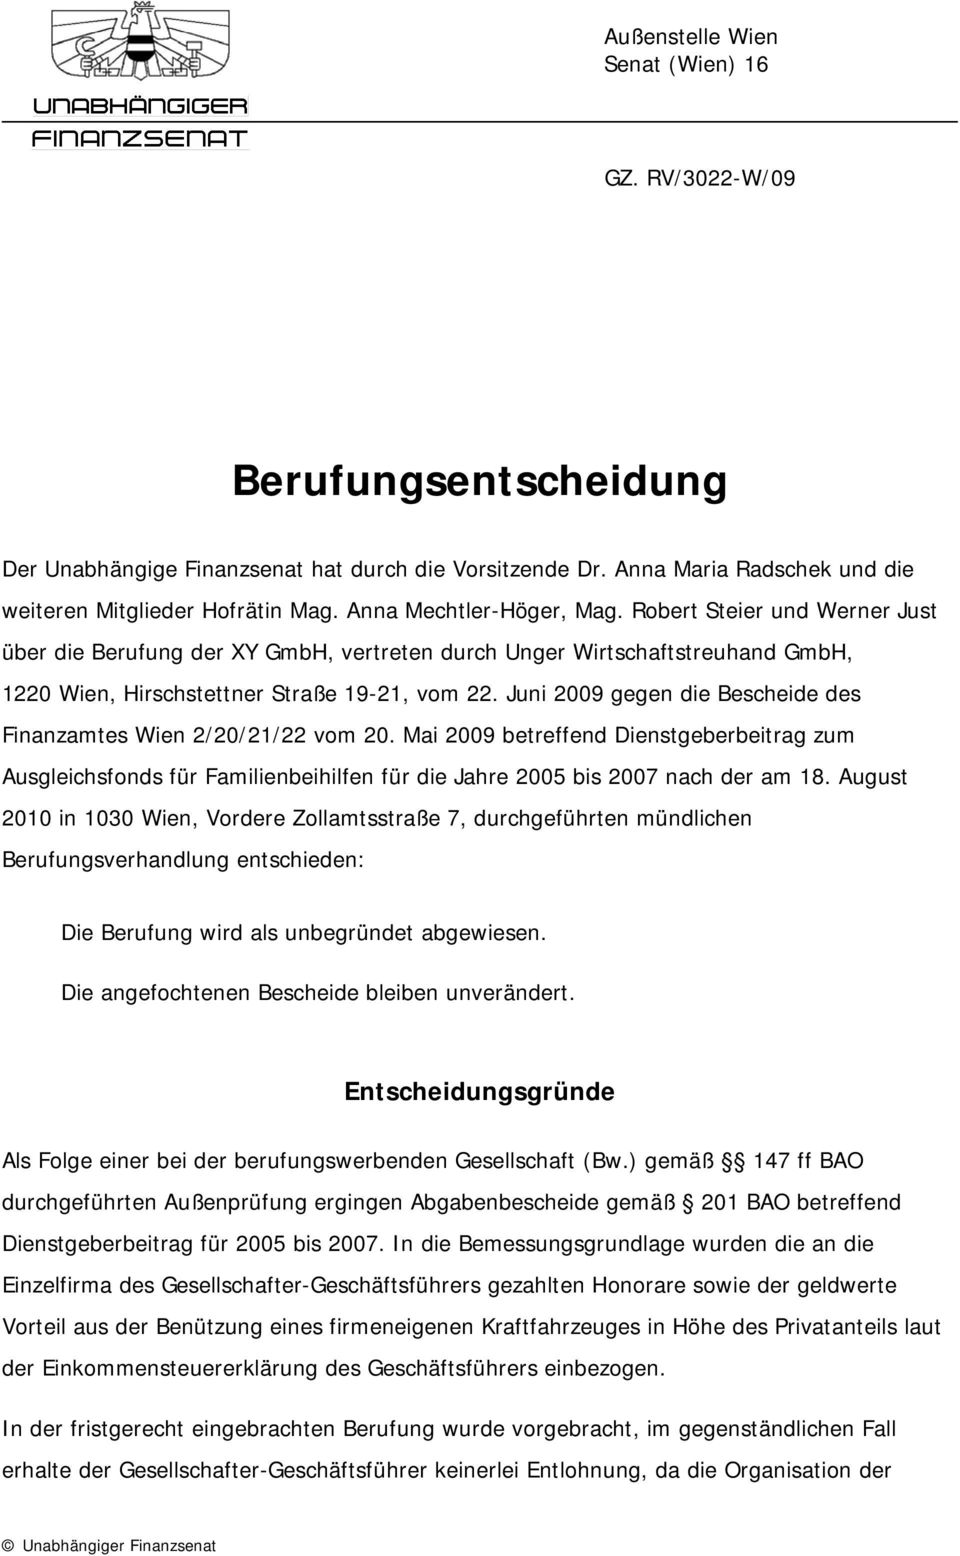 Juni 2009 gegen die Bescheide des Finanzamtes Wien 2/20/21/22 vom 20. Mai 2009 betreffend Dienstgeberbeitrag zum Ausgleichsfonds für Familienbeihilfen für die Jahre 2005 bis 2007 nach der am 18.